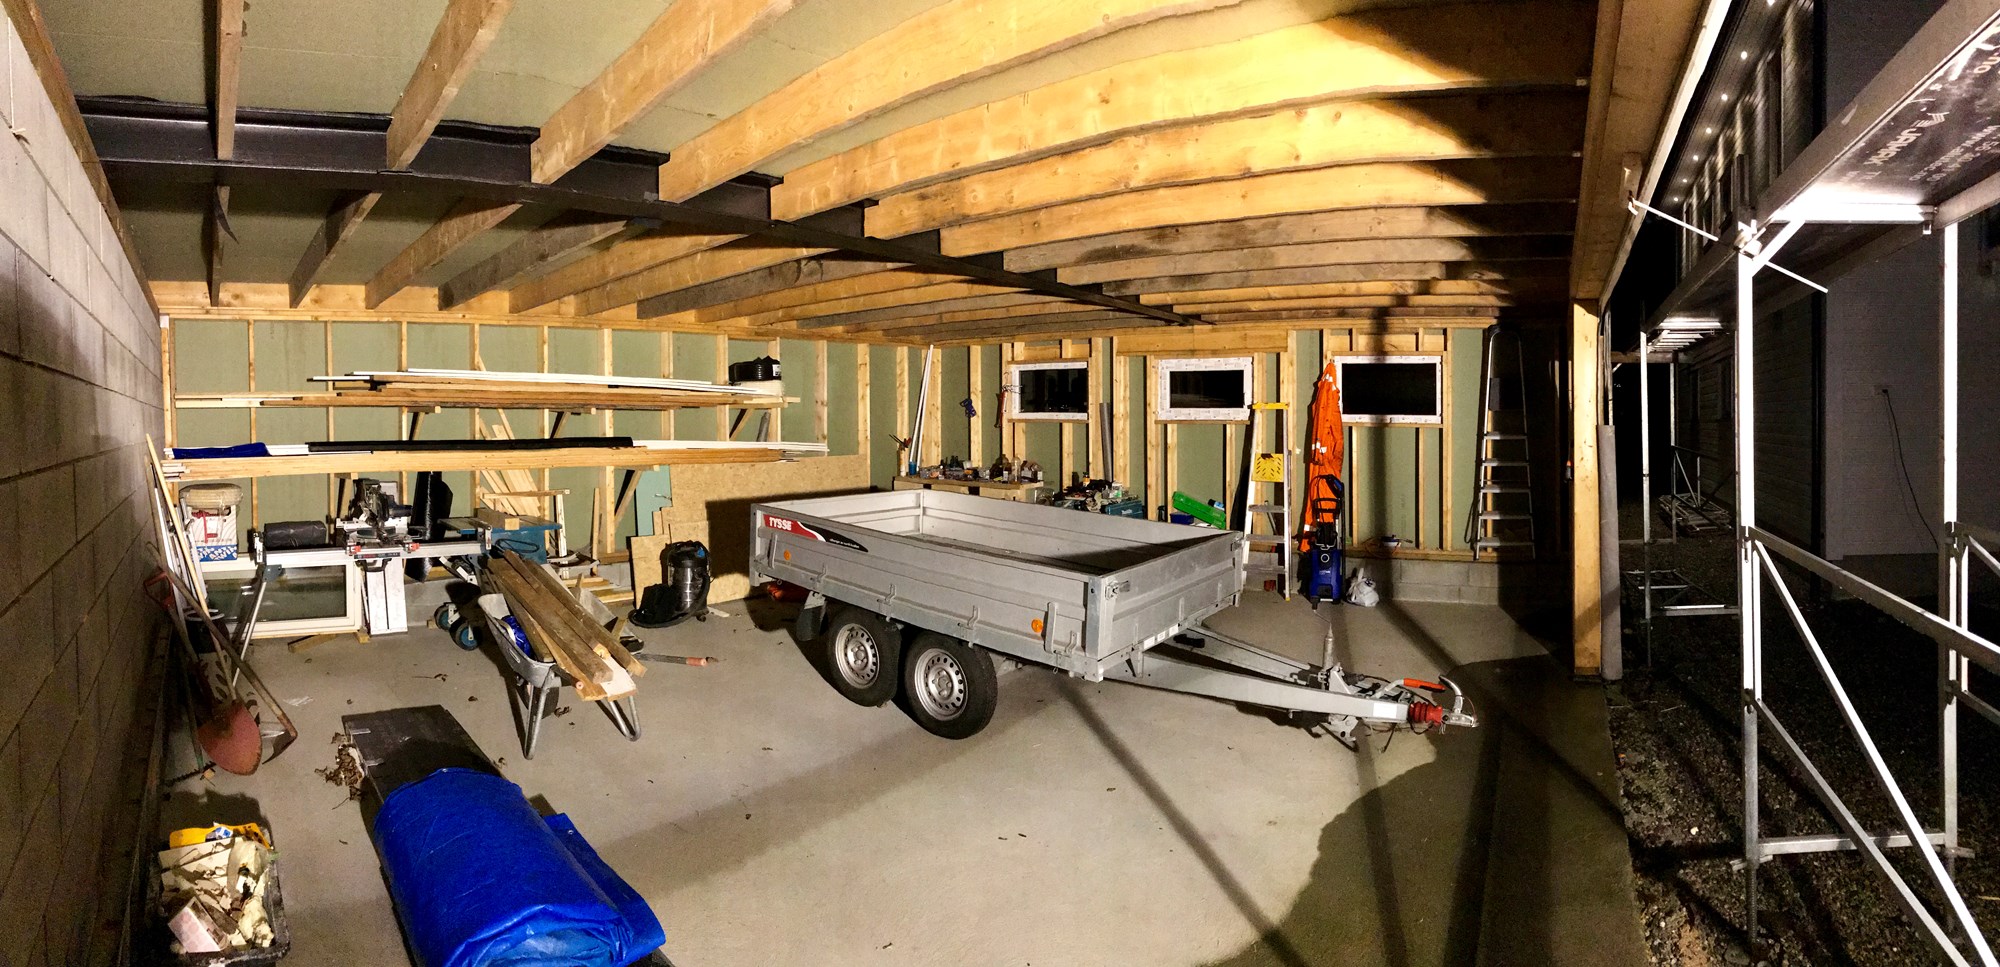 OddK bygger garasje - 56m2 -  - oddkenneth